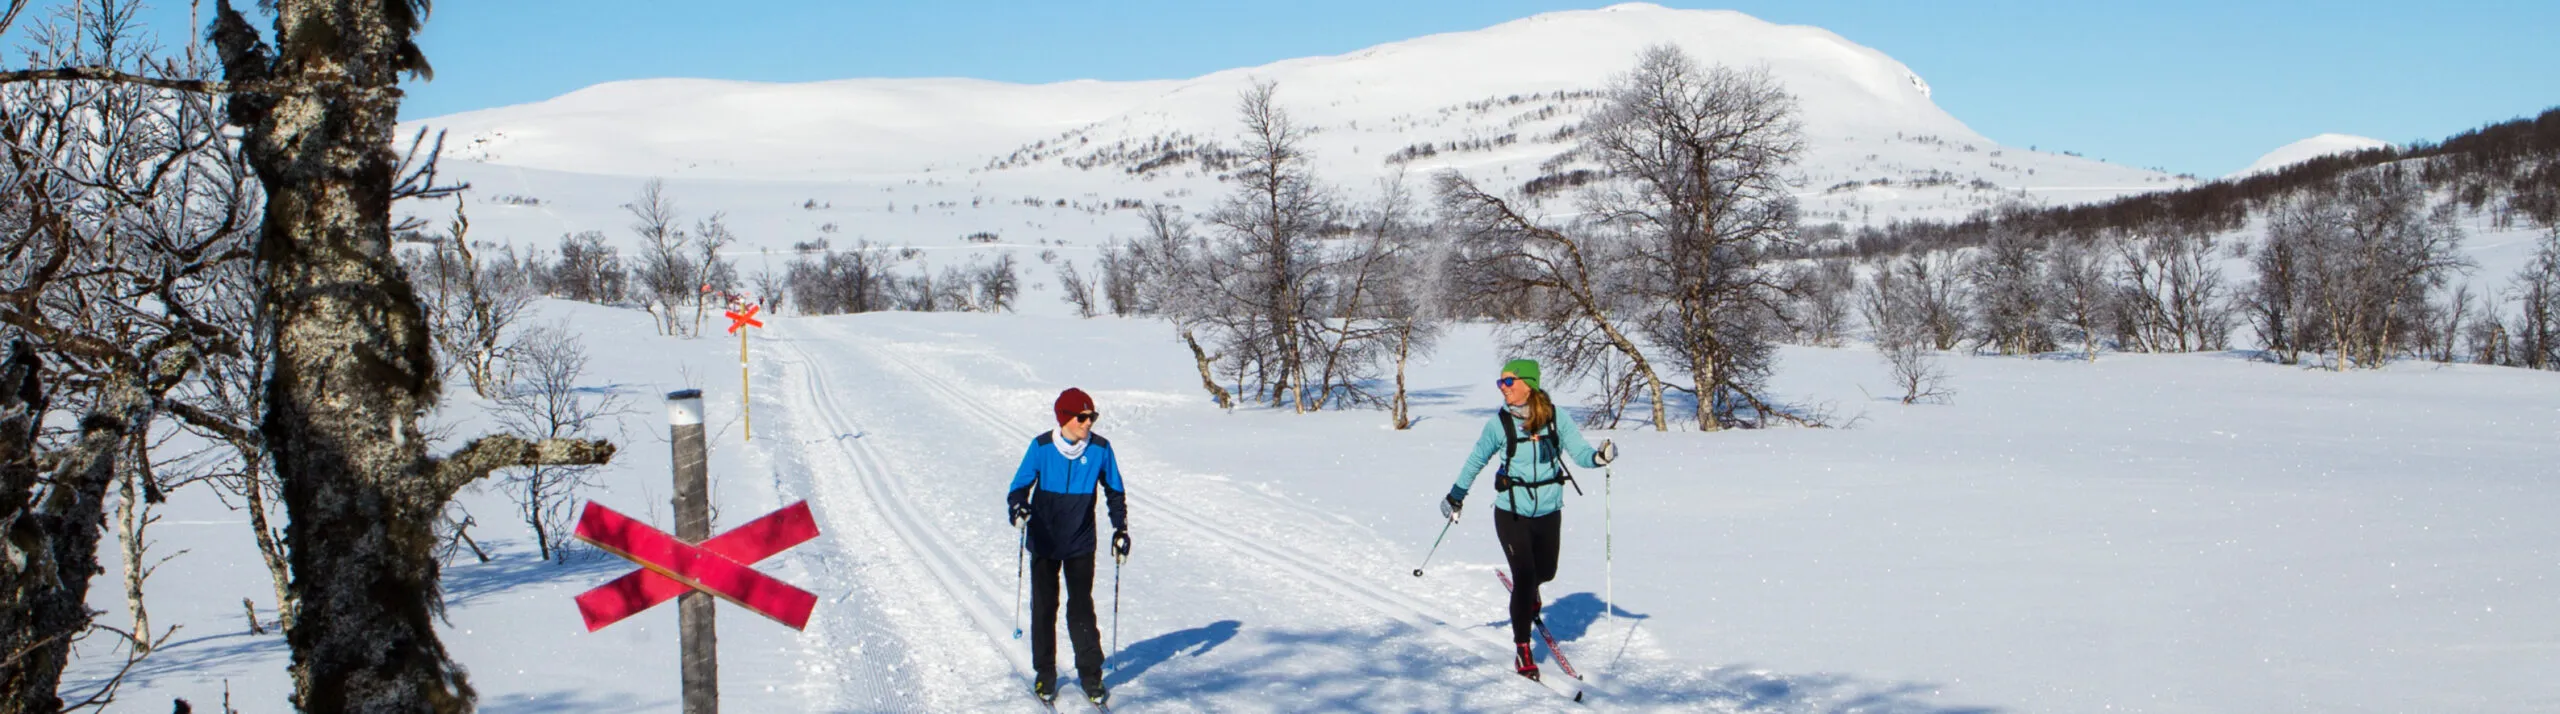 Kvinna och barn åker skidor på fjället